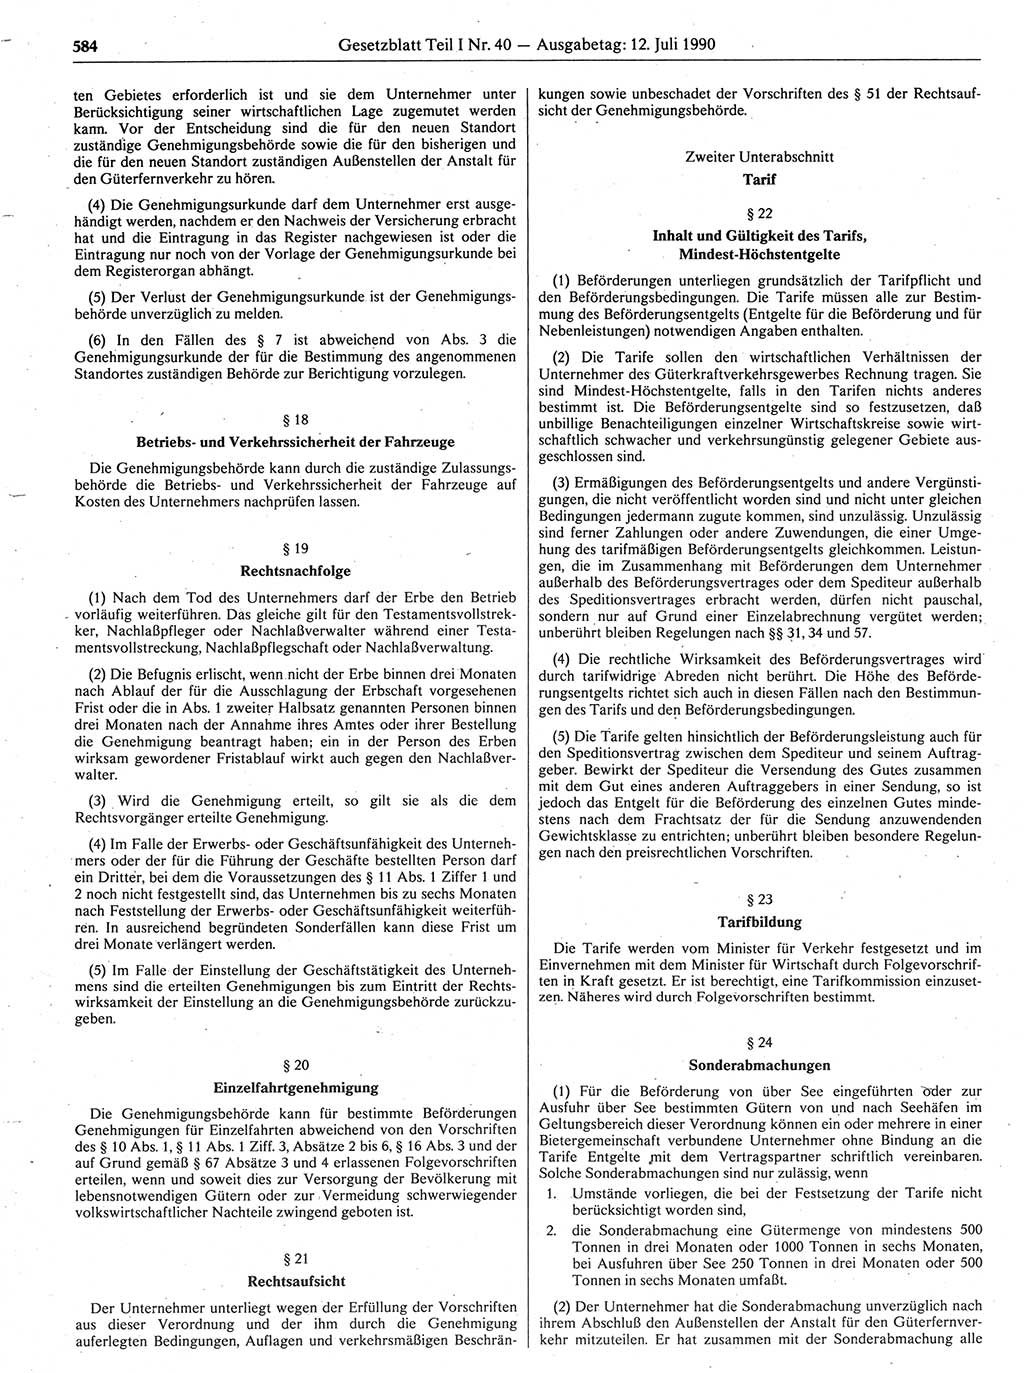 Gesetzblatt (GBl.) der Deutschen Demokratischen Republik (DDR) Teil Ⅰ 1990, Seite 584 (GBl. DDR Ⅰ 1990, S. 584)